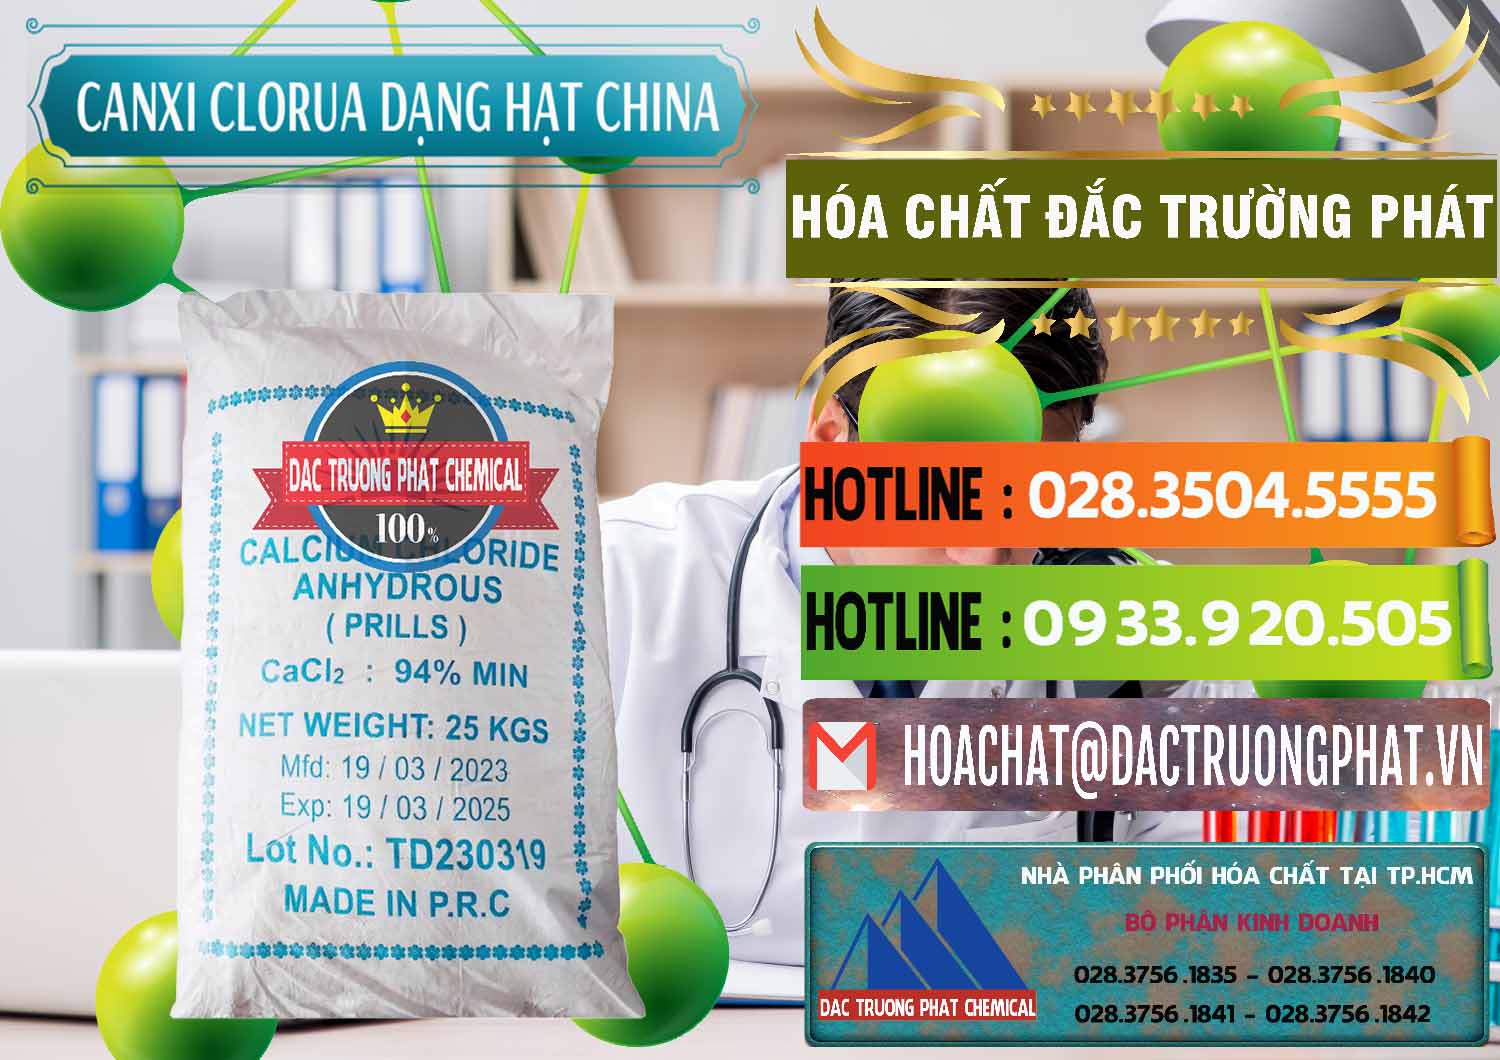 Cty chuyên bán ( cung cấp ) CaCl2 – Canxi Clorua 94% Dạng Hạt Trung Quốc China - 0373 - Nơi cung cấp và kinh doanh hóa chất tại TP.HCM - cungcaphoachat.com.vn